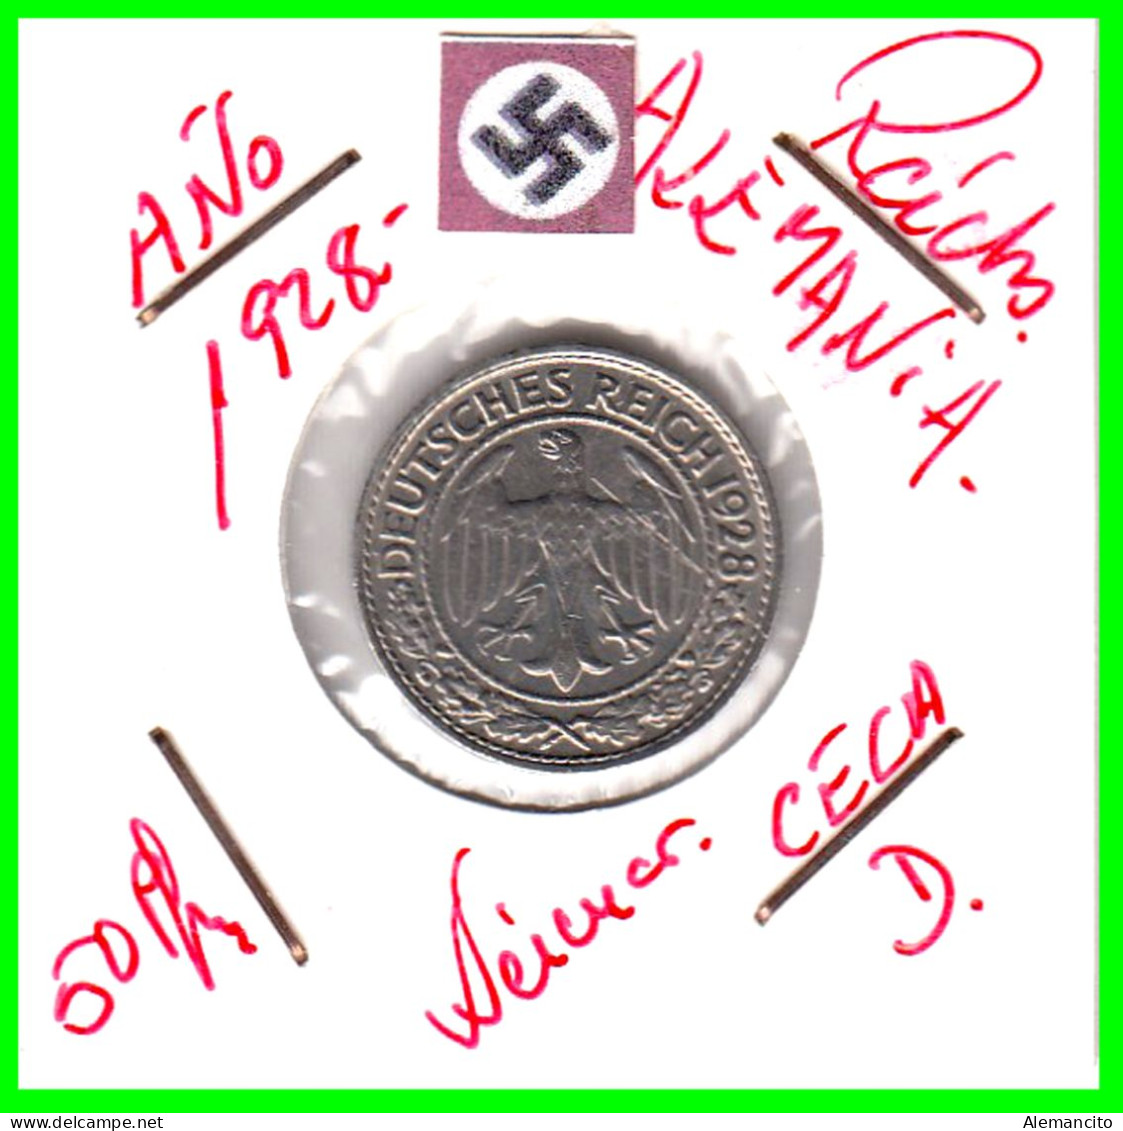 GERMANY REPÚBLICA DE WEIMAR 50 REICHSPFENNIG ( 1928 CECA - D )  (REICHSPFENNIG KM # 40 - 50 Rentenpfennig & 50 Reichspfennig